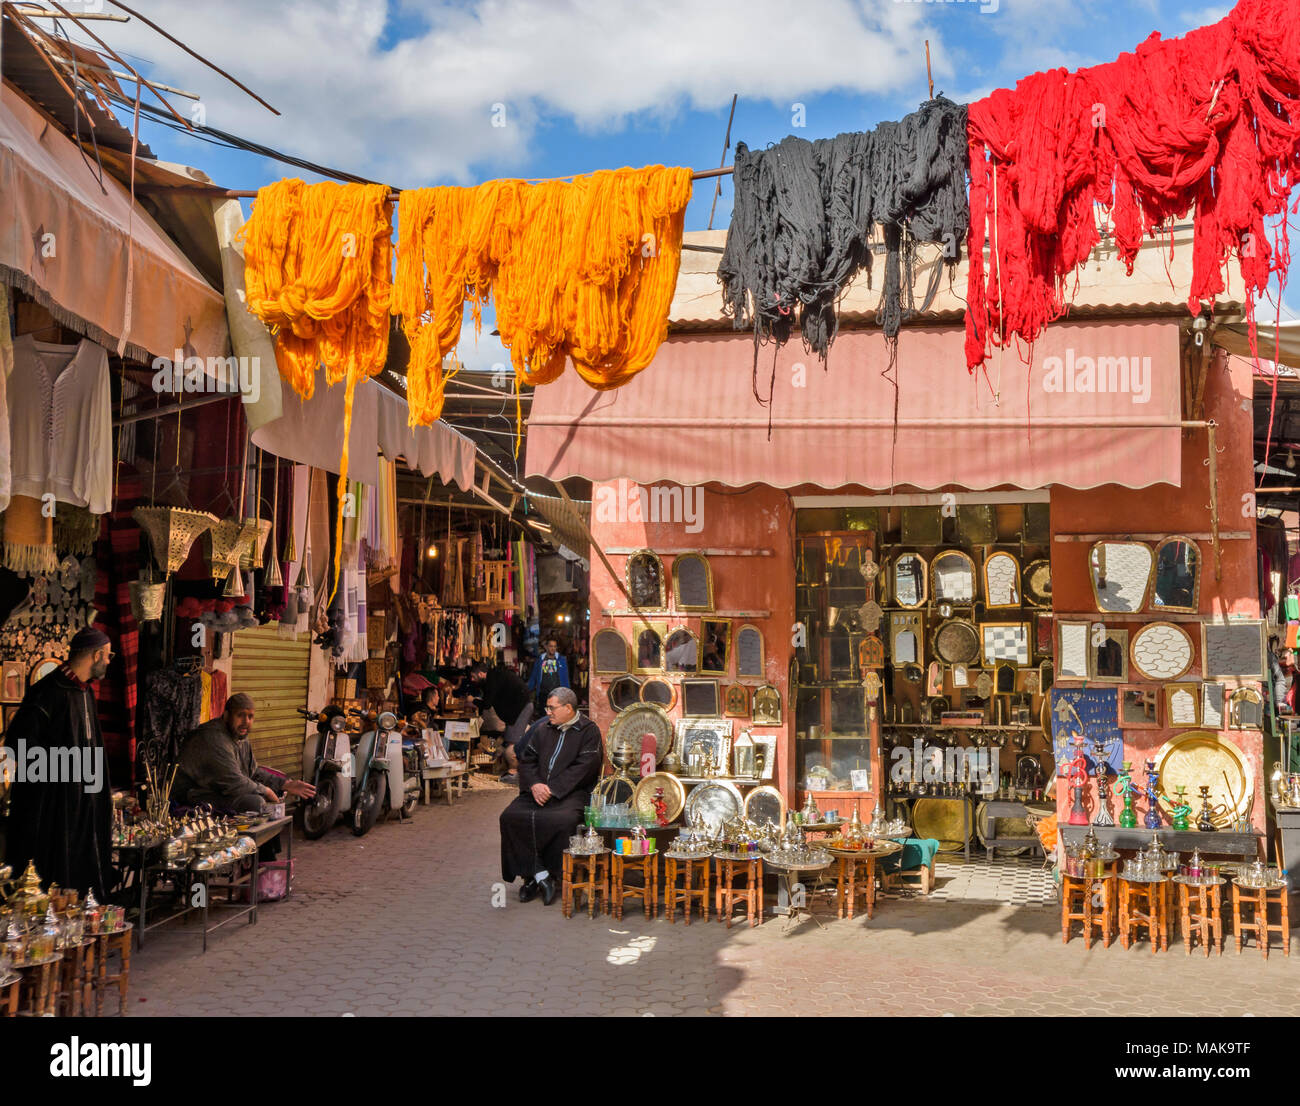 Il Marocco Marrakech Jemaa el Fna MEDINA SOUK NEGOZI CON multicolore lana tinta appeso dai pali ad asciugare al sole Foto Stock